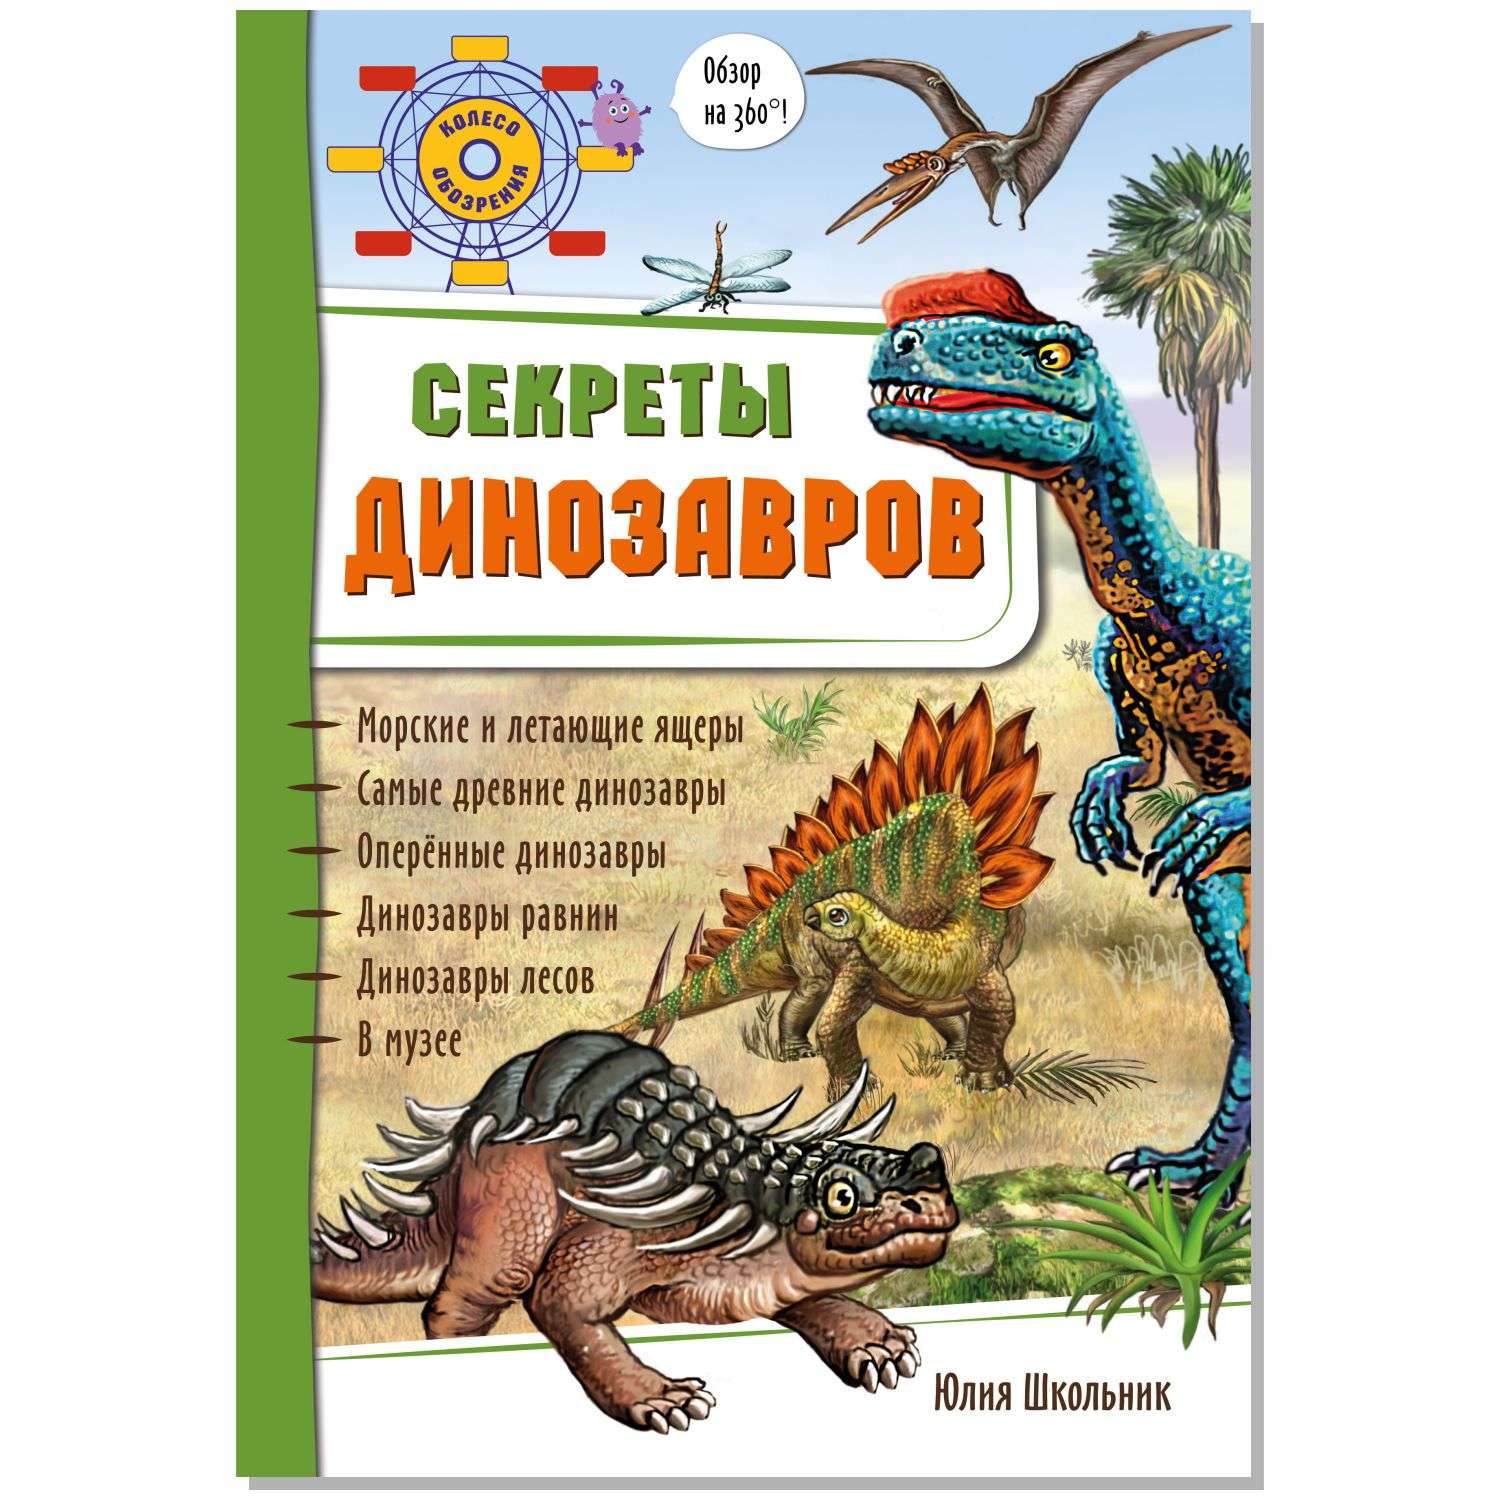 Сказки читать динозавров. Книжки про динозавров. Книга про динозавров для детей. Детская книга про динозавров с картинками. Книжки про динозавров читать.